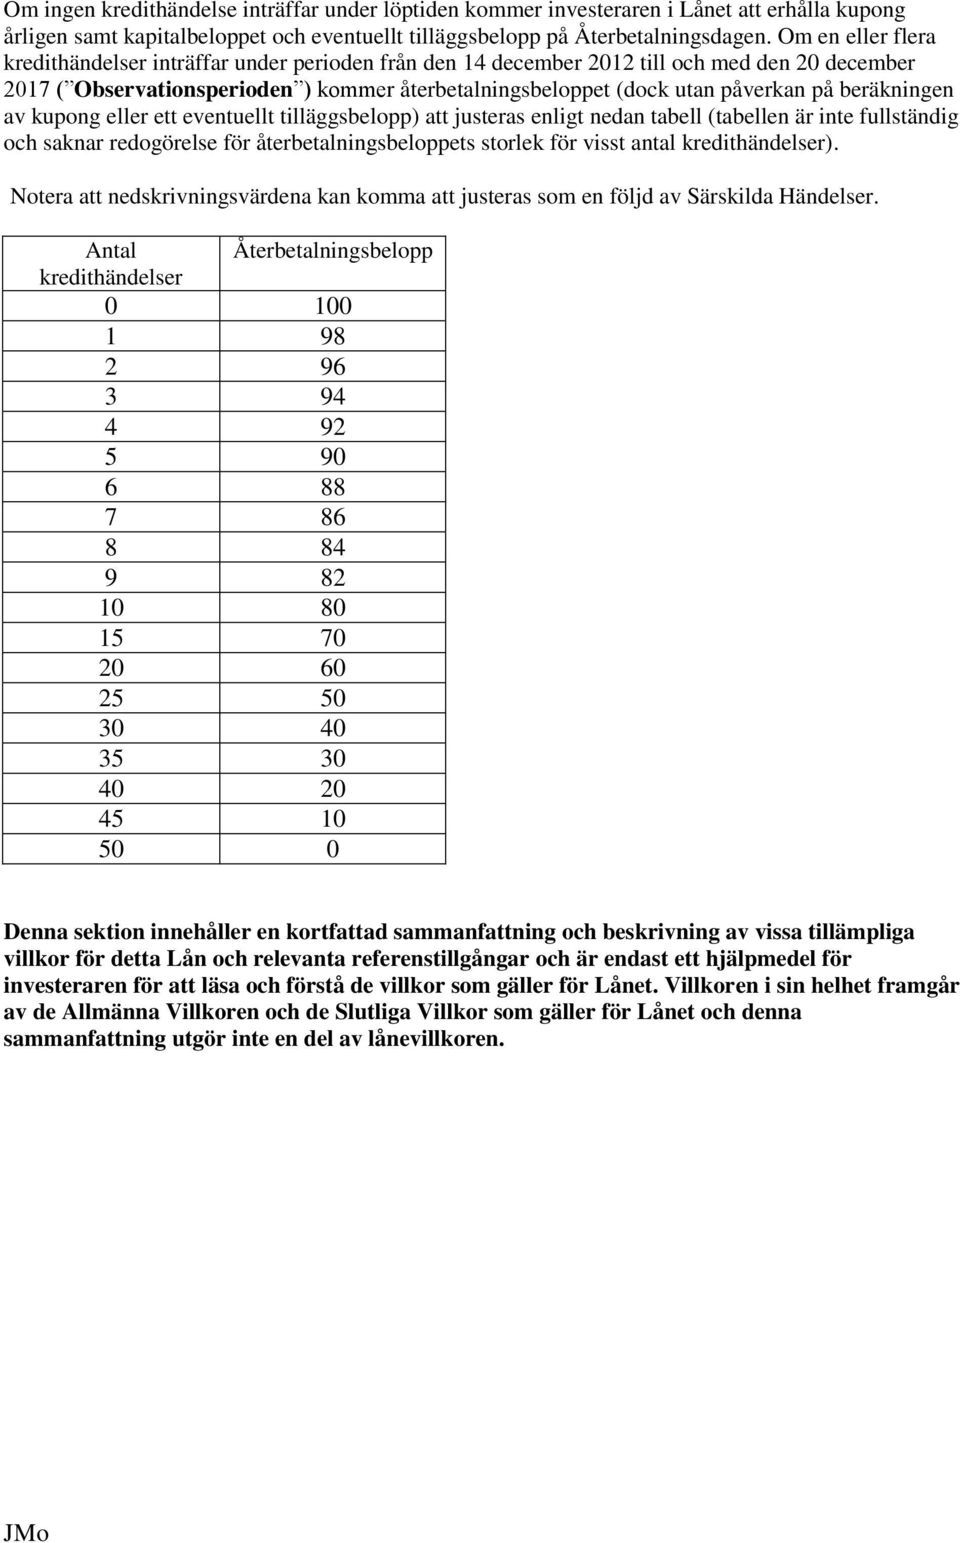 beräkningen av kupong eller ett eventuellt tilläggsbelopp) att justeras enligt nedan tabell (tabellen är inte fullständig och saknar redogörelse för återbetalningsbeloppets storlek för visst antal